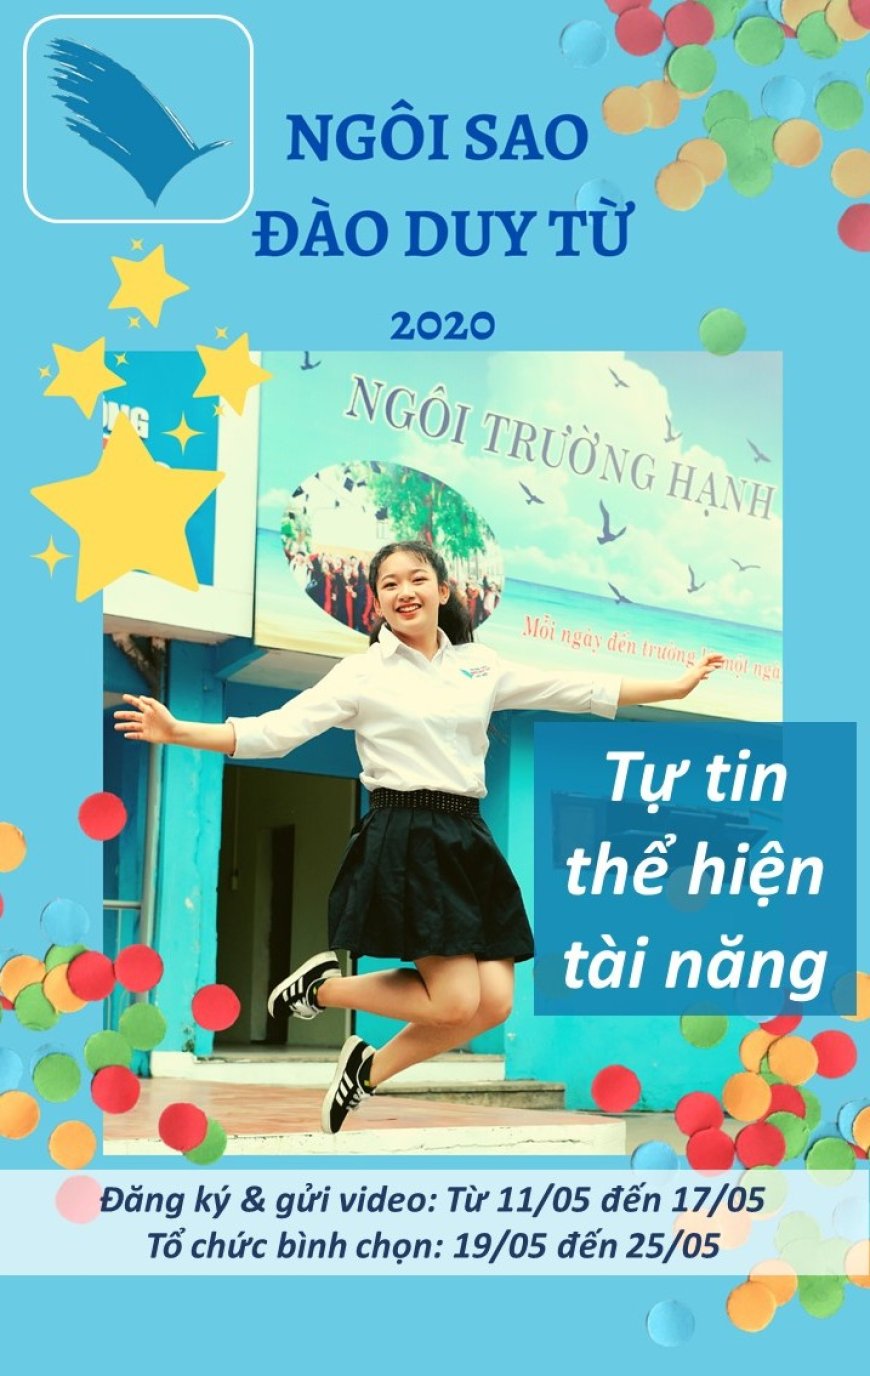 Thông báo về cuộc thi “NGÔI SAO ĐÀO DUY TỪ – “DAO DUY TU JUNIOR STAR” 2020 - Trường THCS Đào Duy Từ Hà Nội